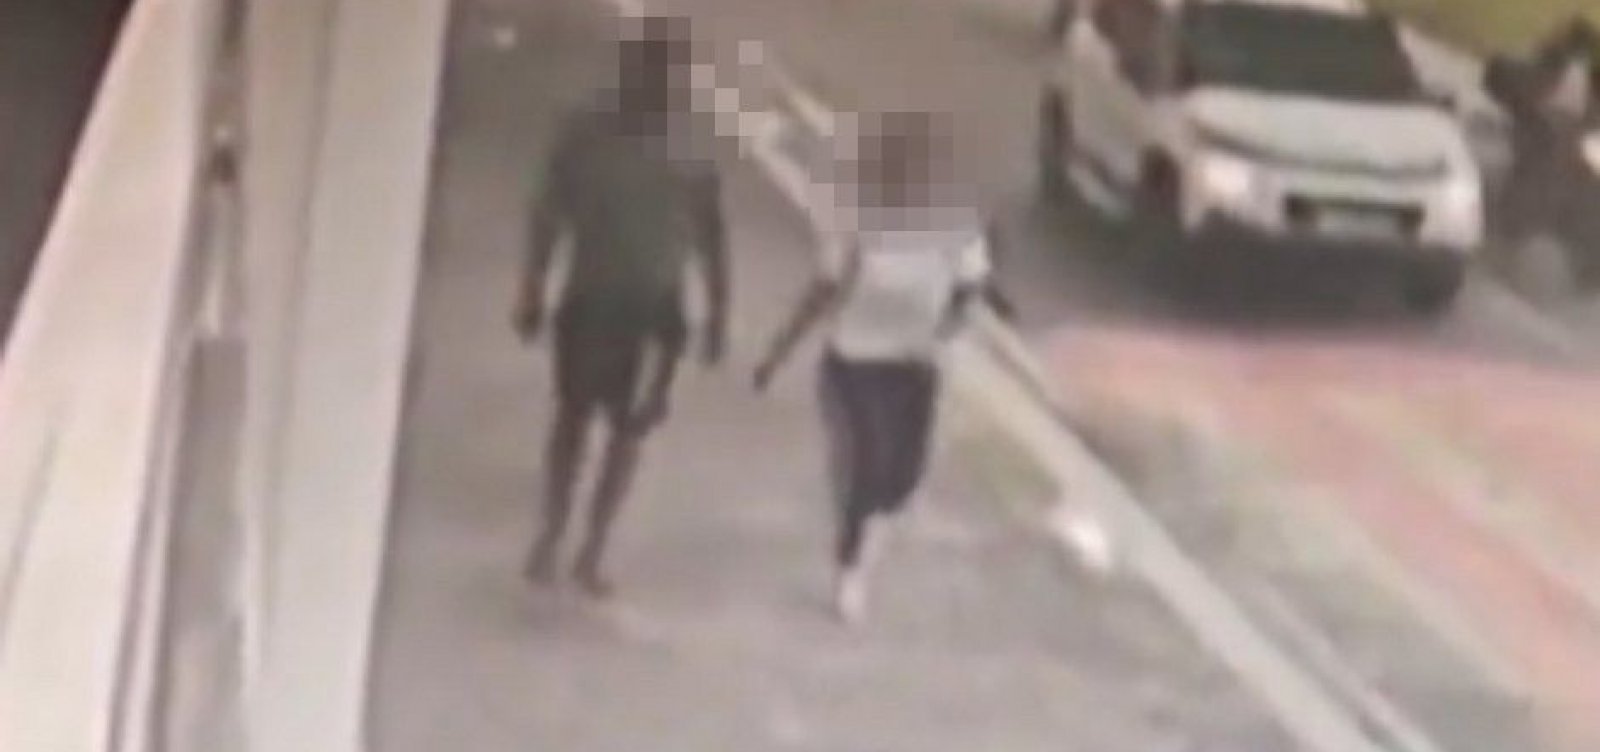 Jovem estuprada em Ondina é sétima vítima de suspeito foragido, aponta Polícia Civil